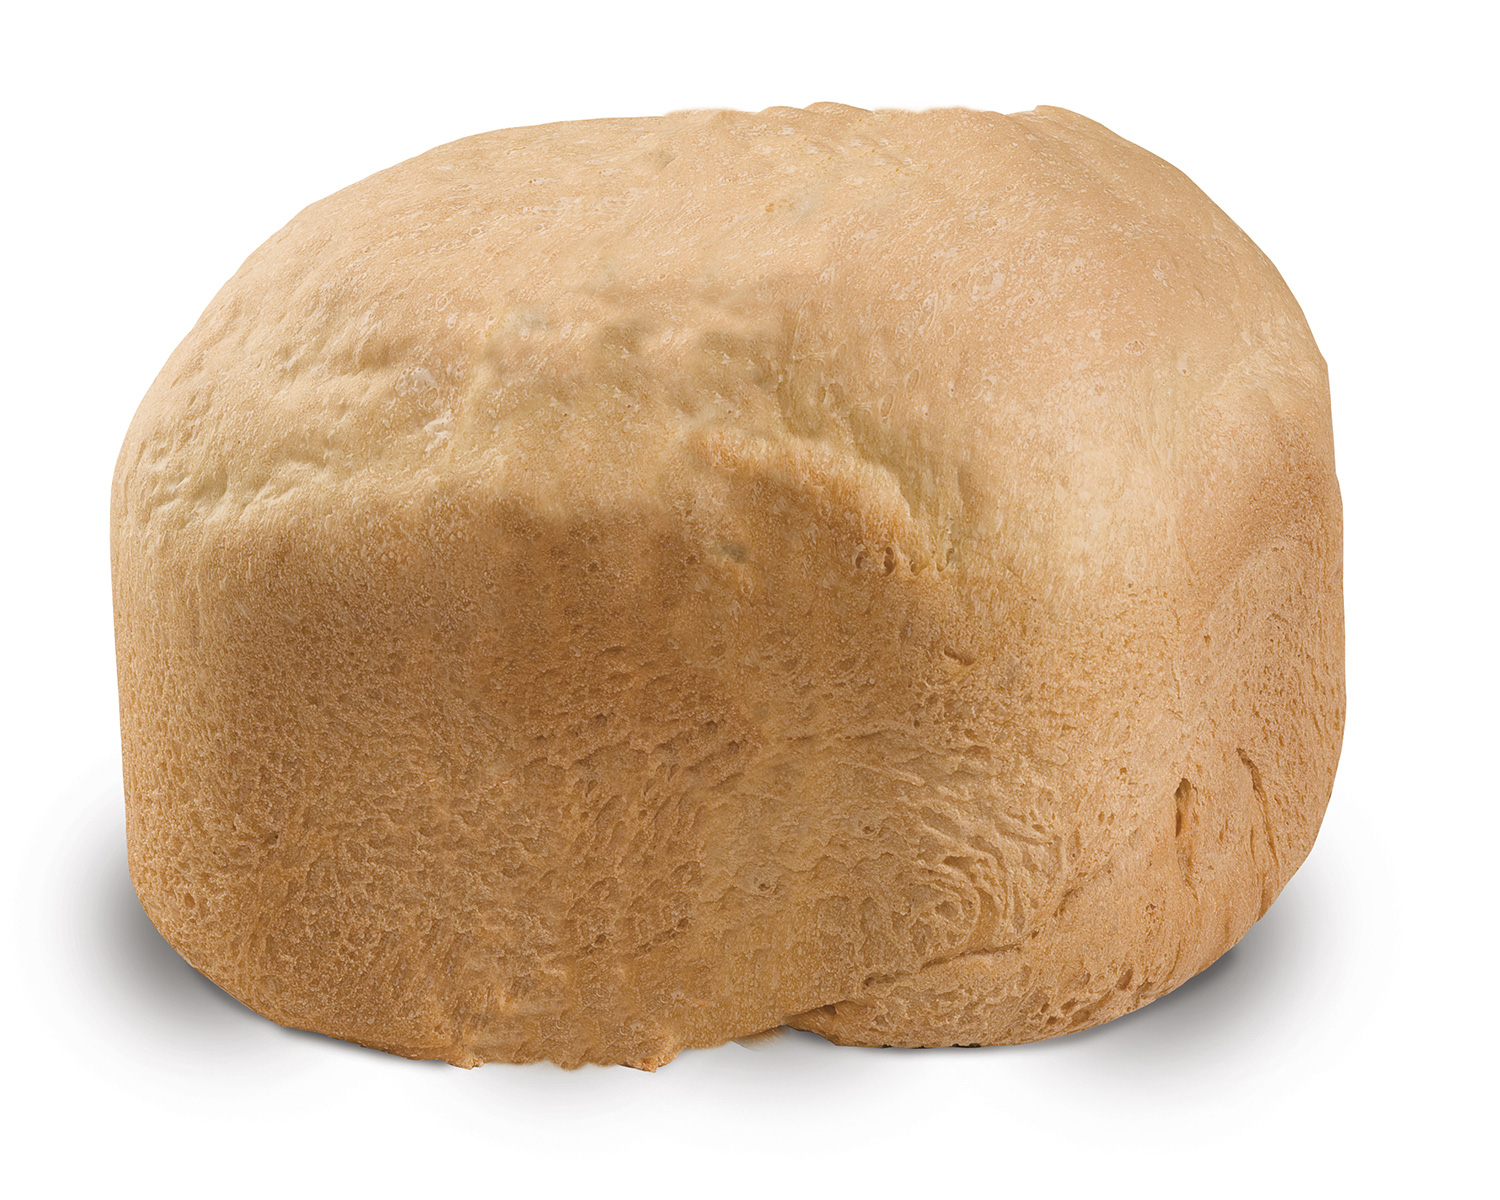 Bread and Dough Maker